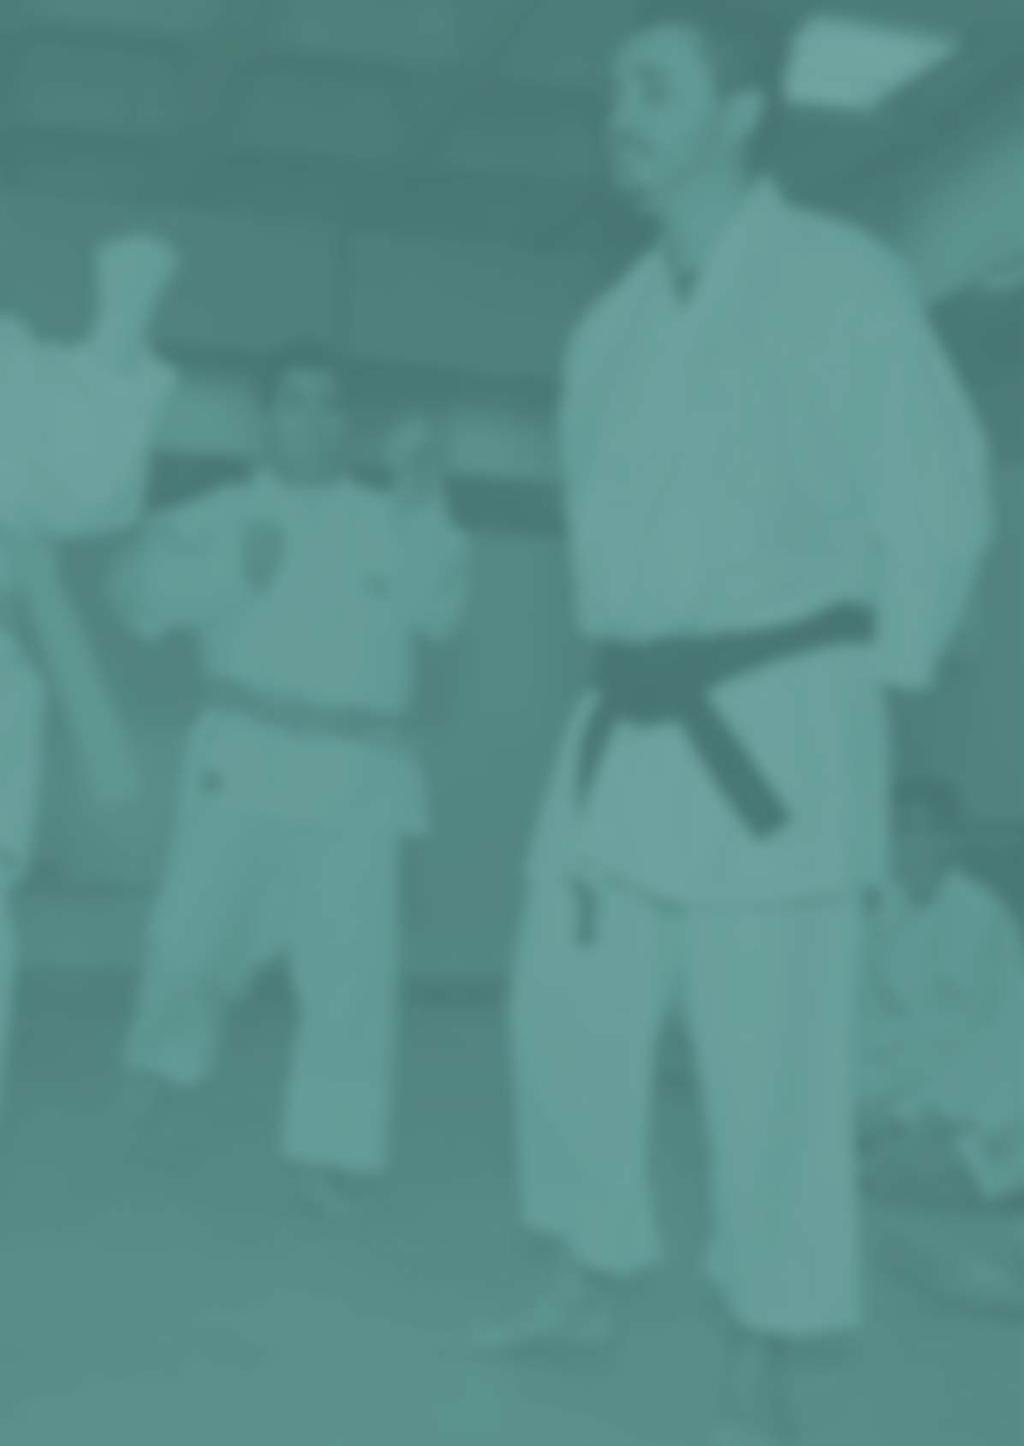 APRESENTAÇÃO No material a seguir, mostraremos como foi desenvolvido o projeto Karate VII - Inclusão pelo Esporte.